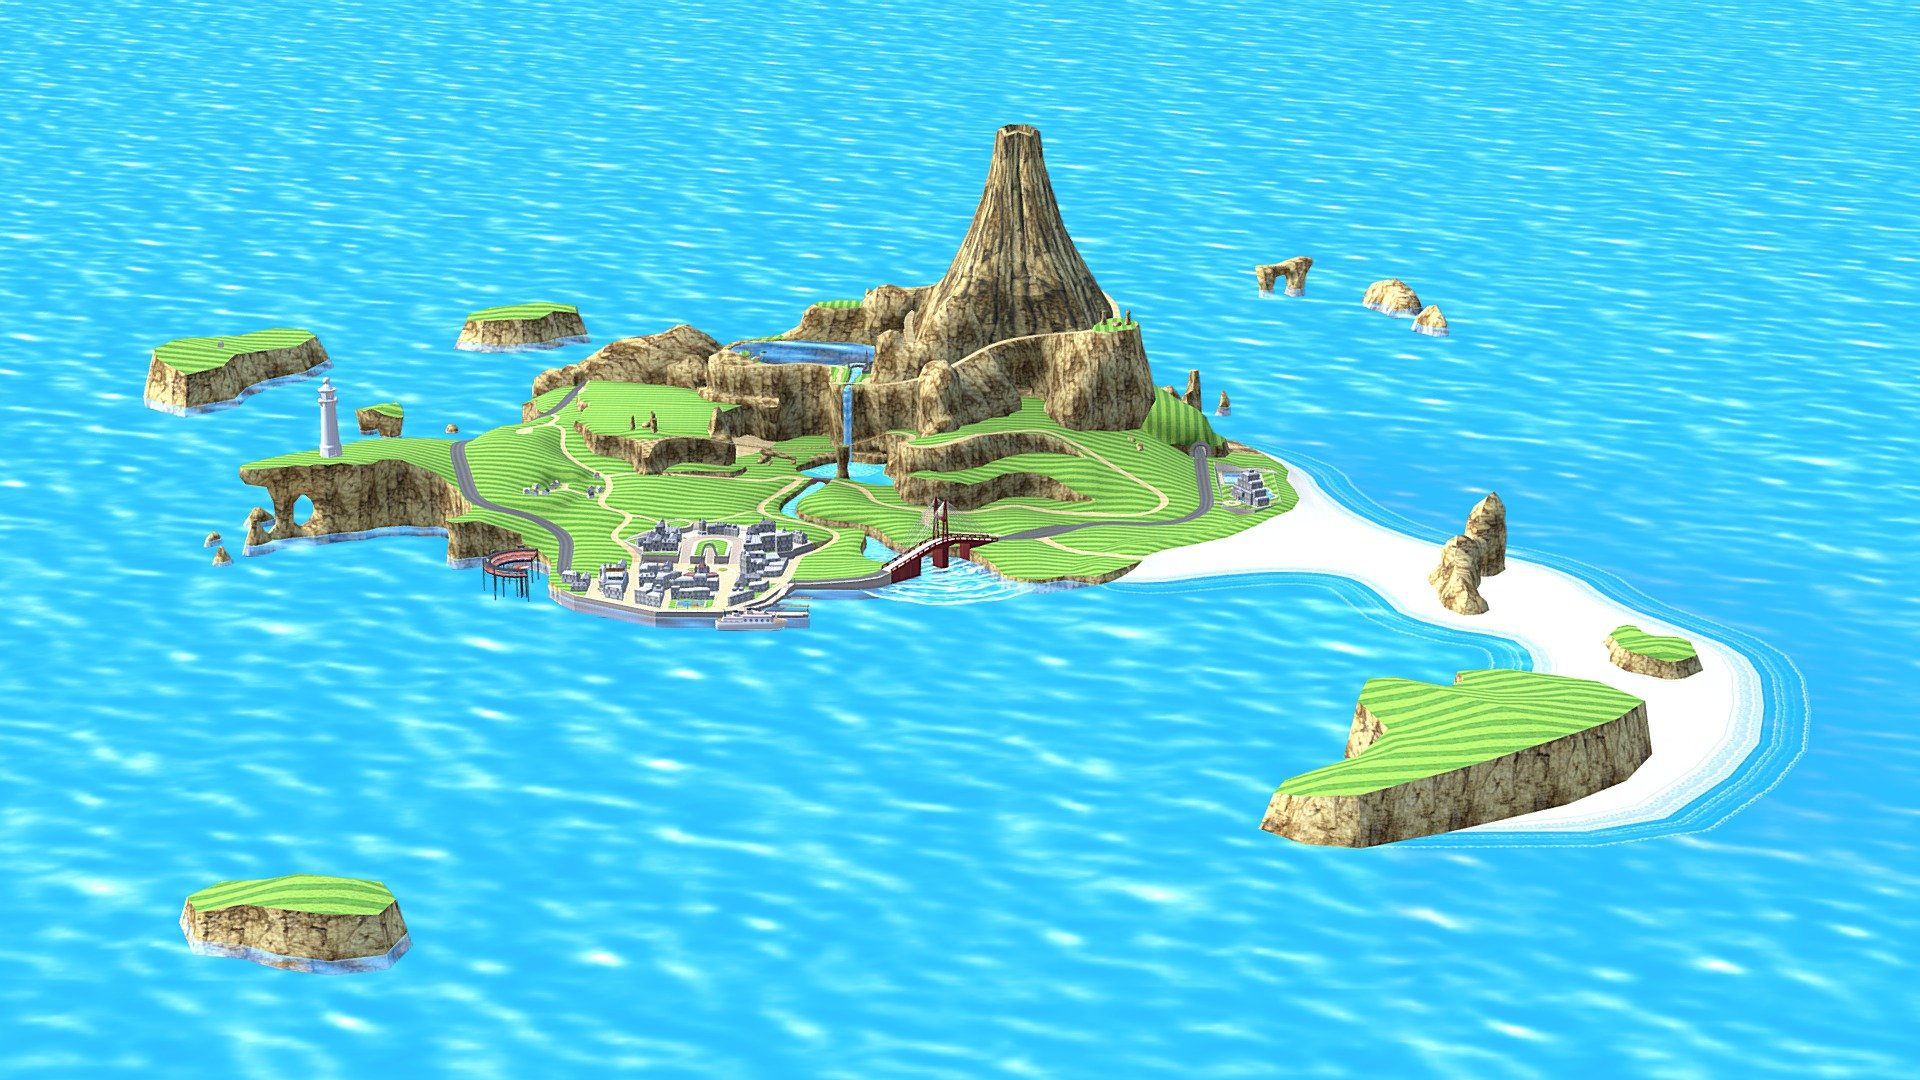 Wuhu Island - Wii Sports Resort - Download Free 3D model by Nelib